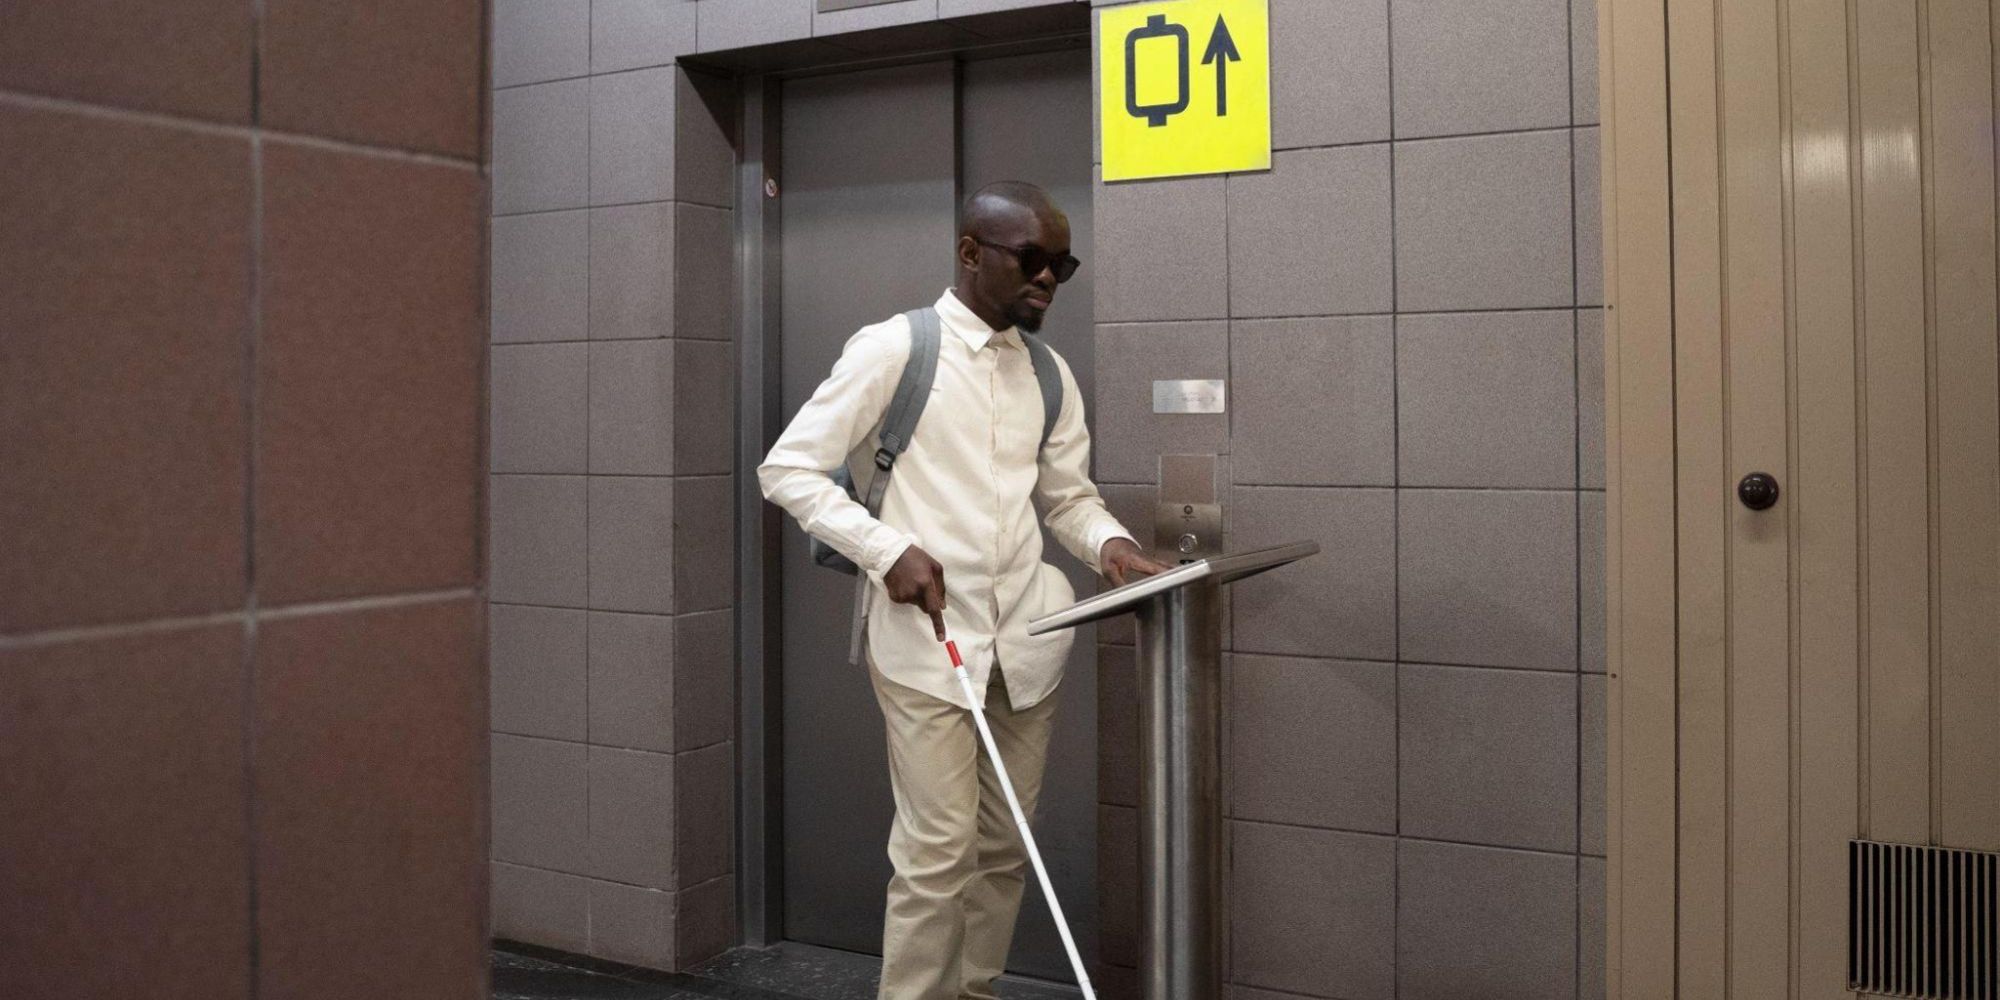 A blind man navigating a digital signage installation.